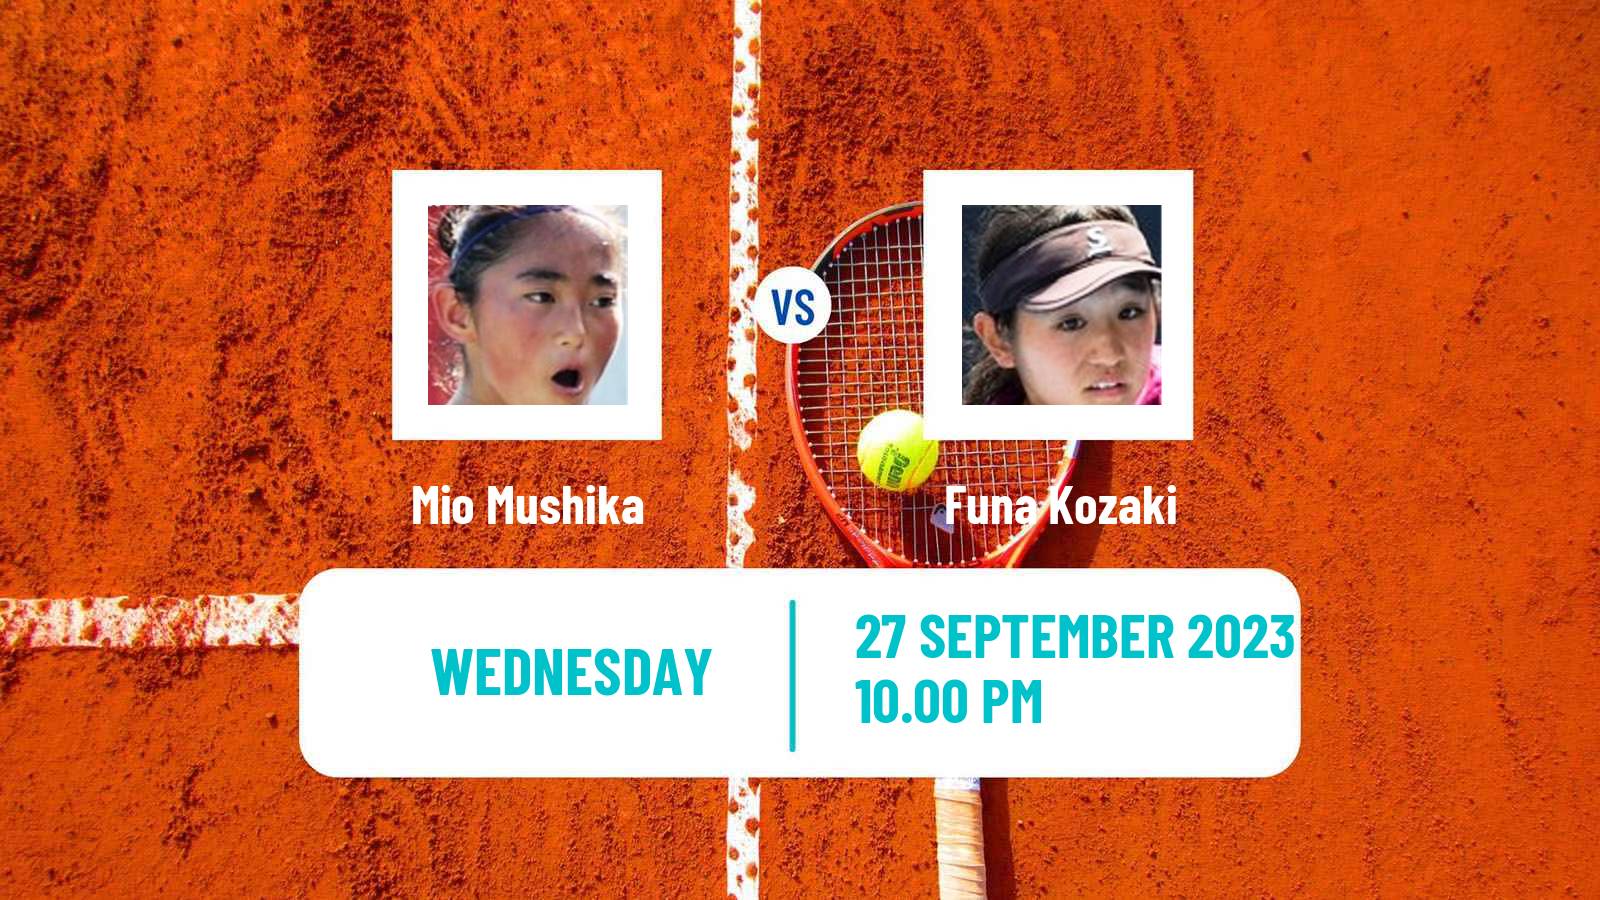 Tennis ITF W40 Nanao Women Mio Mushika - Funa Kozaki